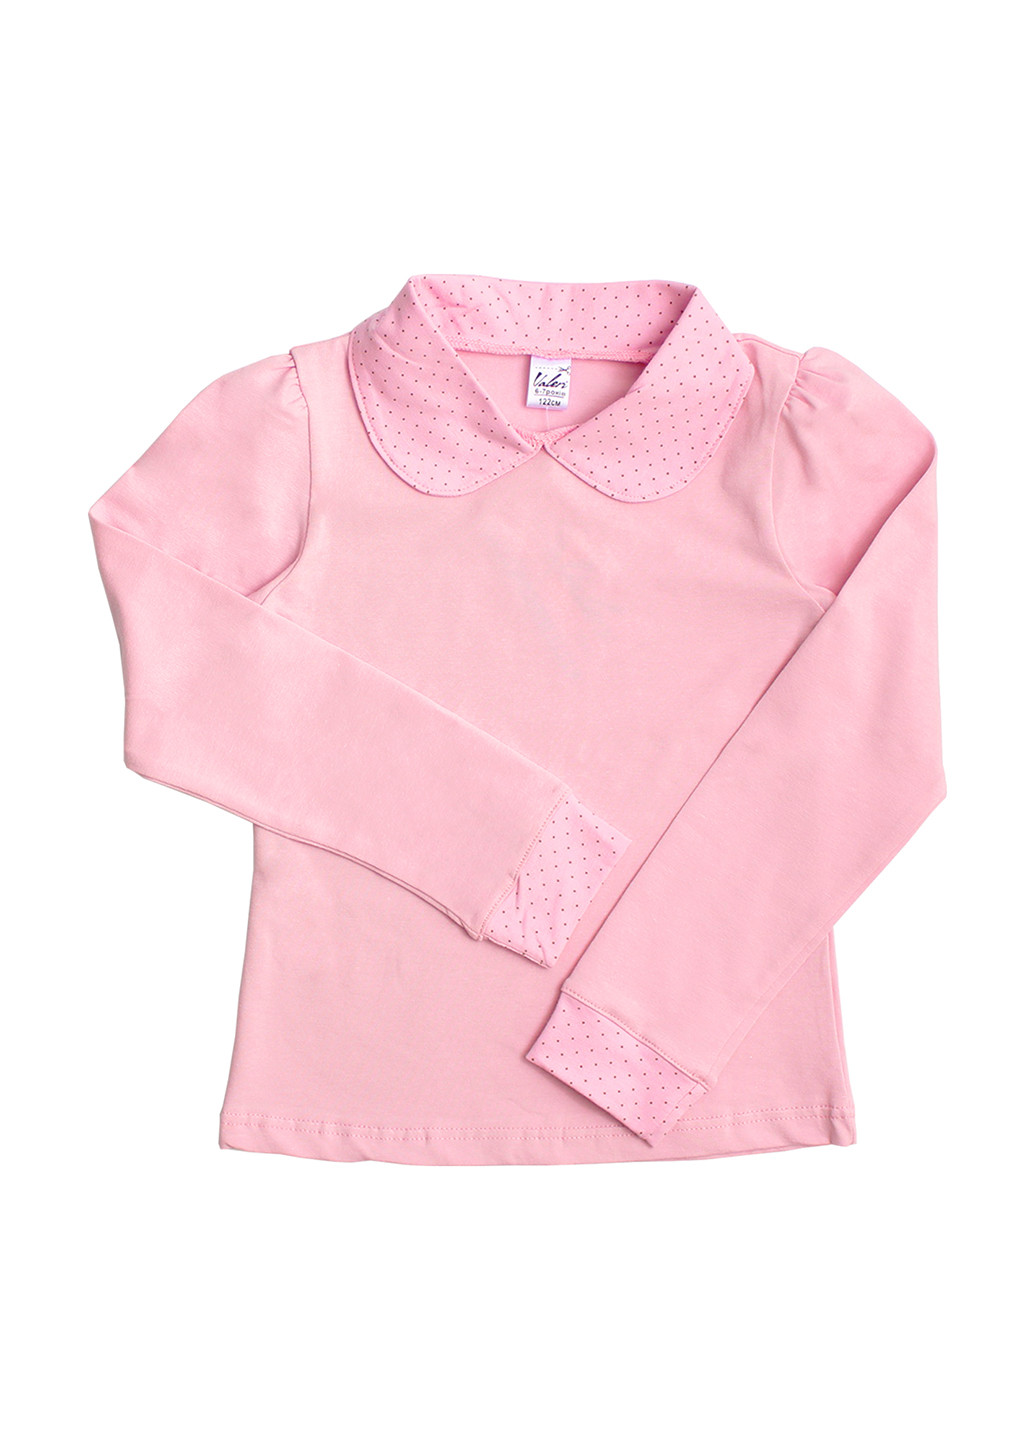 Розовая в горошек блузка Валери-Текс демисезонная